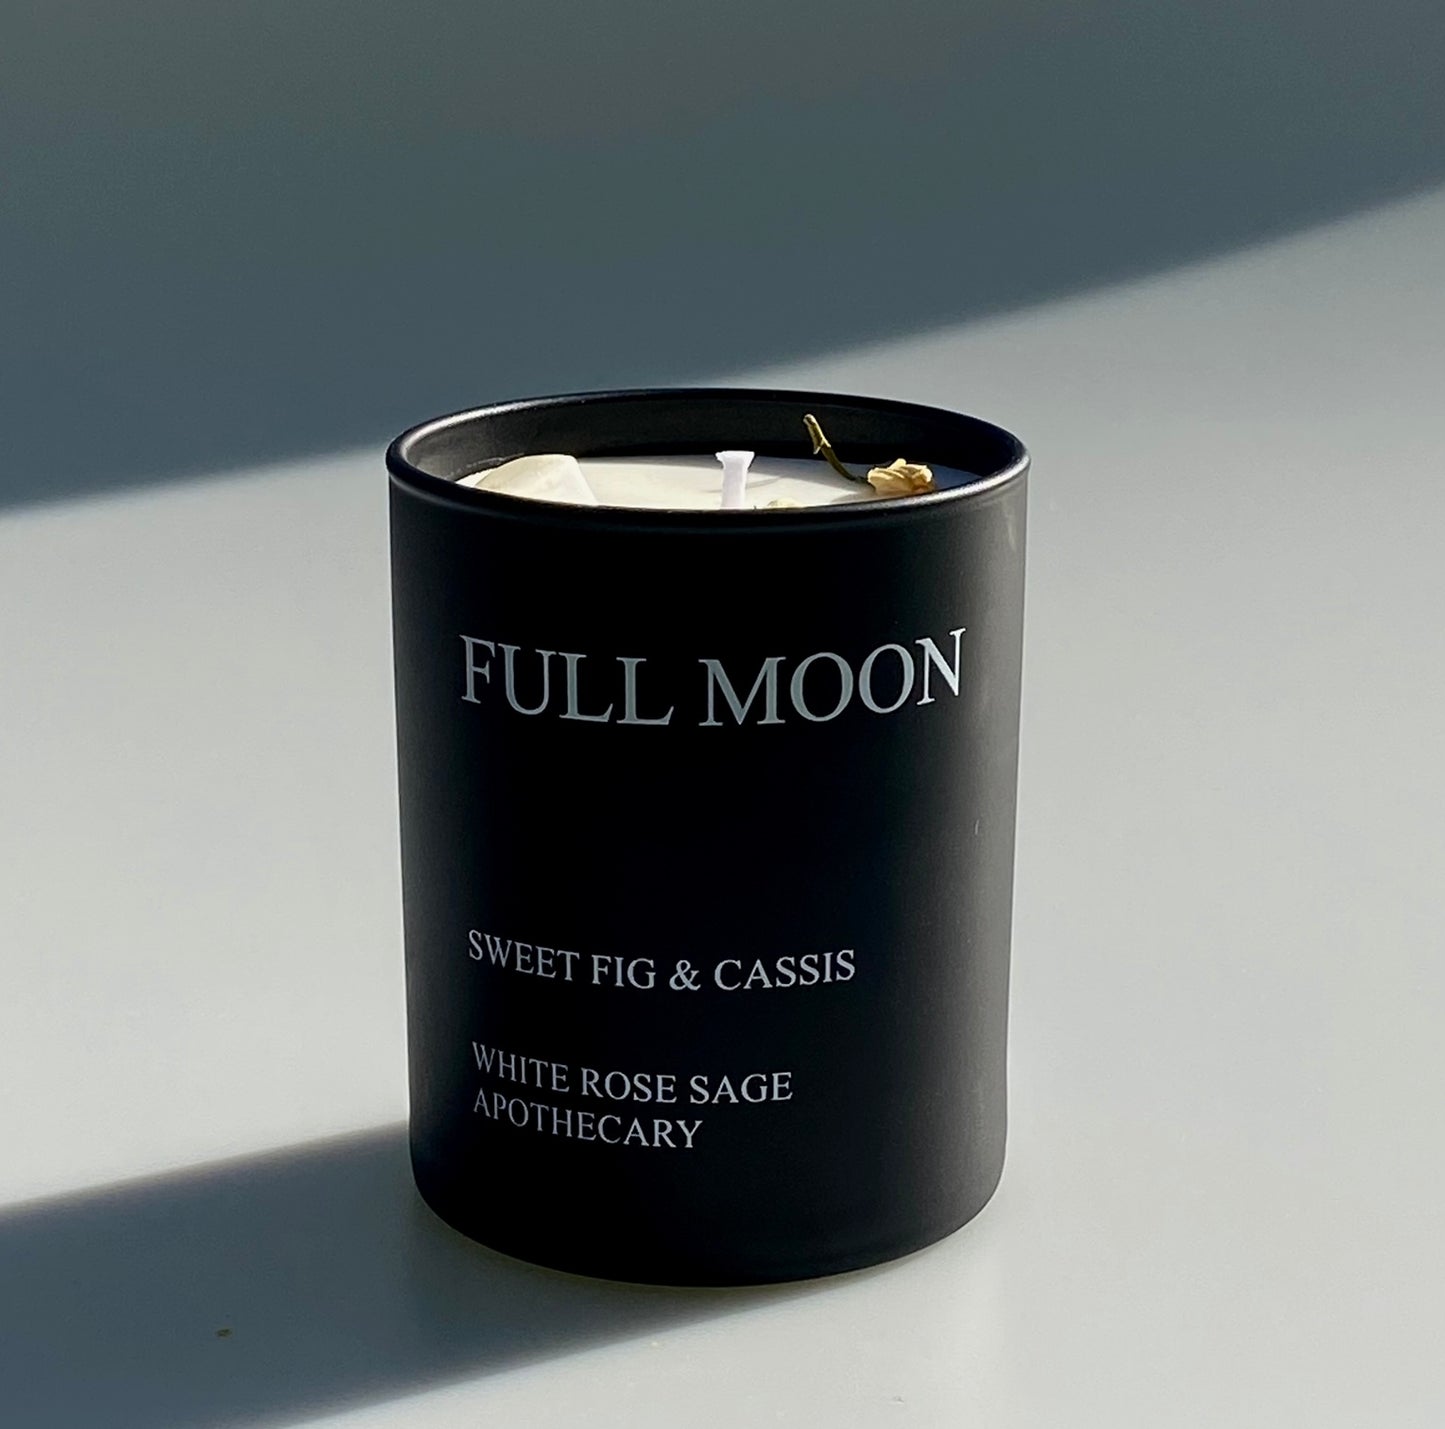 Full Moon (No box)